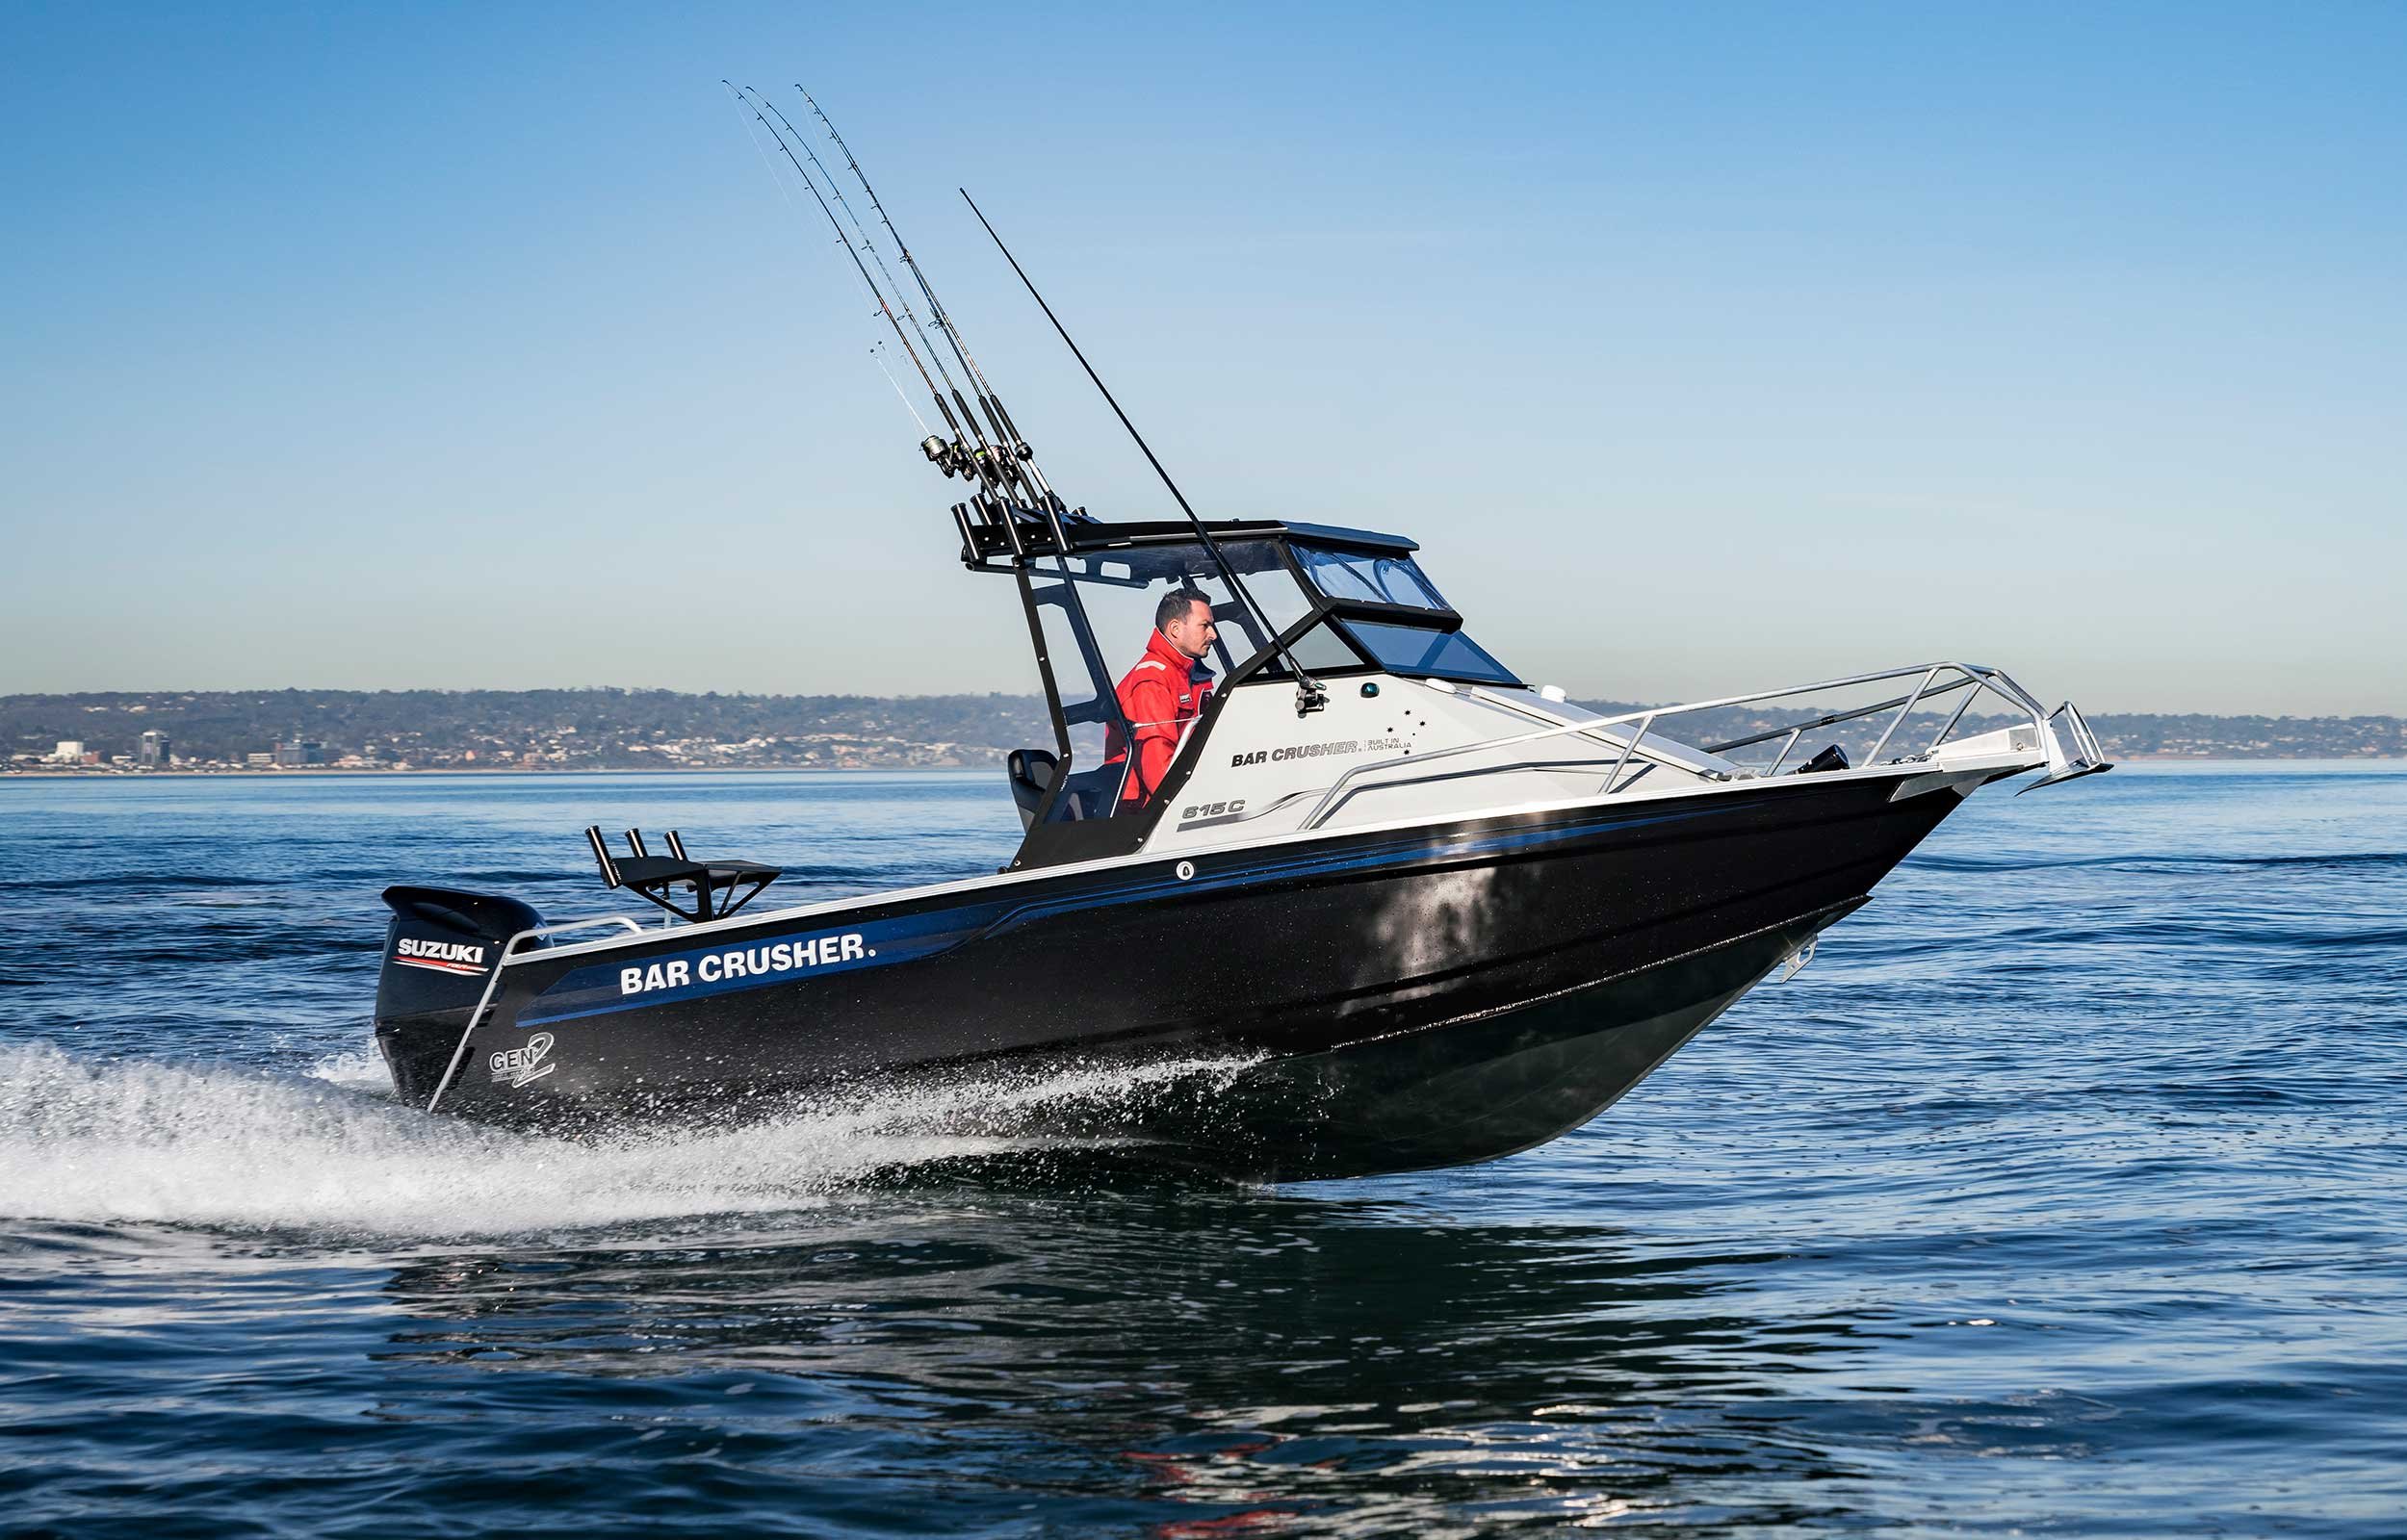 models-bar-crusher-615c-plate-aluminium-fishing-boat-2019-web-9-1